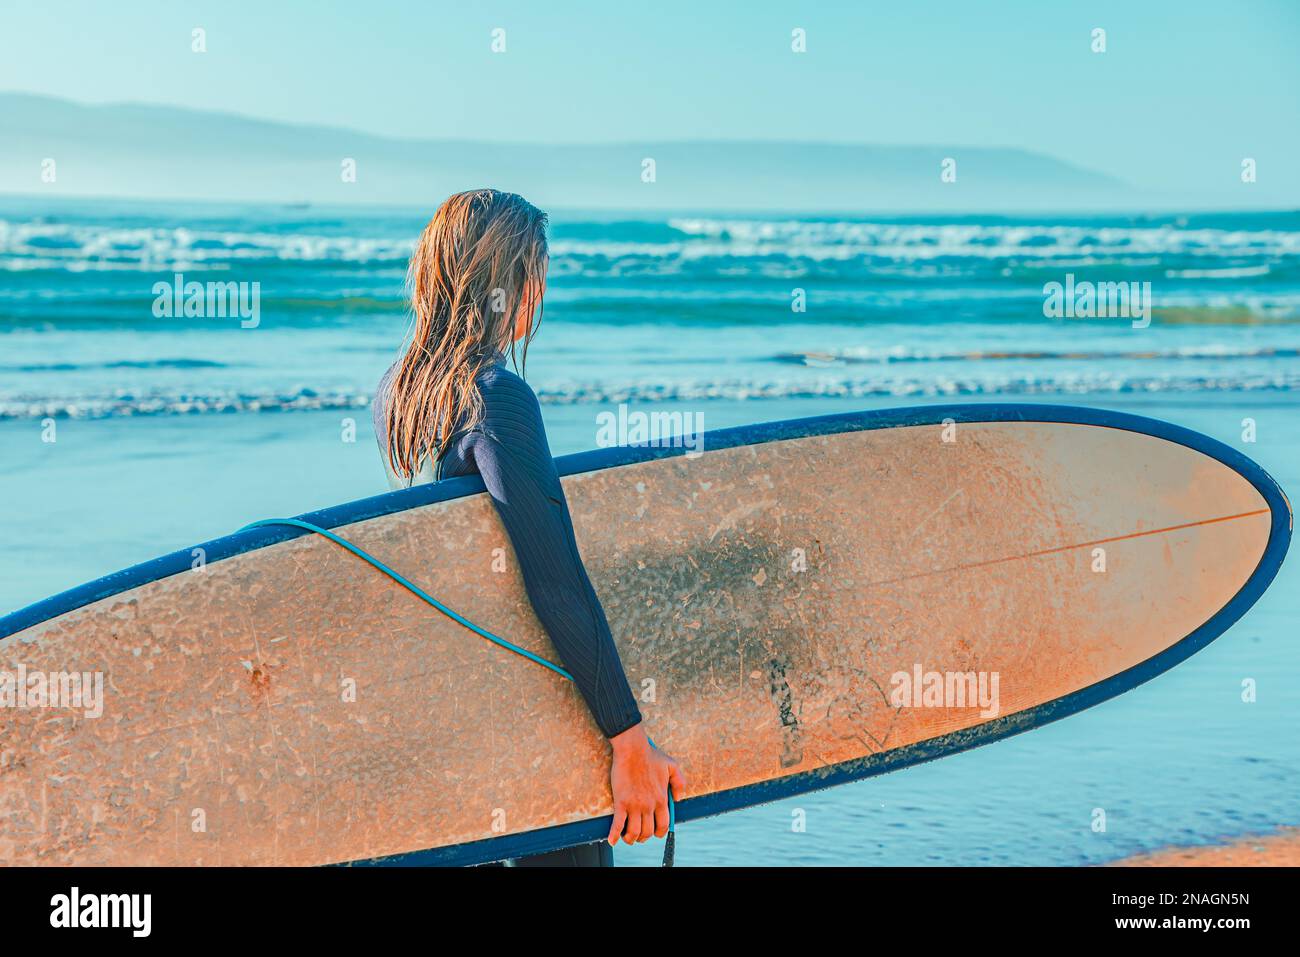 Eine weibliche Strandgängerin steht am Ufer mit einem Surfbrett in der Hand und blickt auf den Horizont des Ozeans hinaus Stockfoto